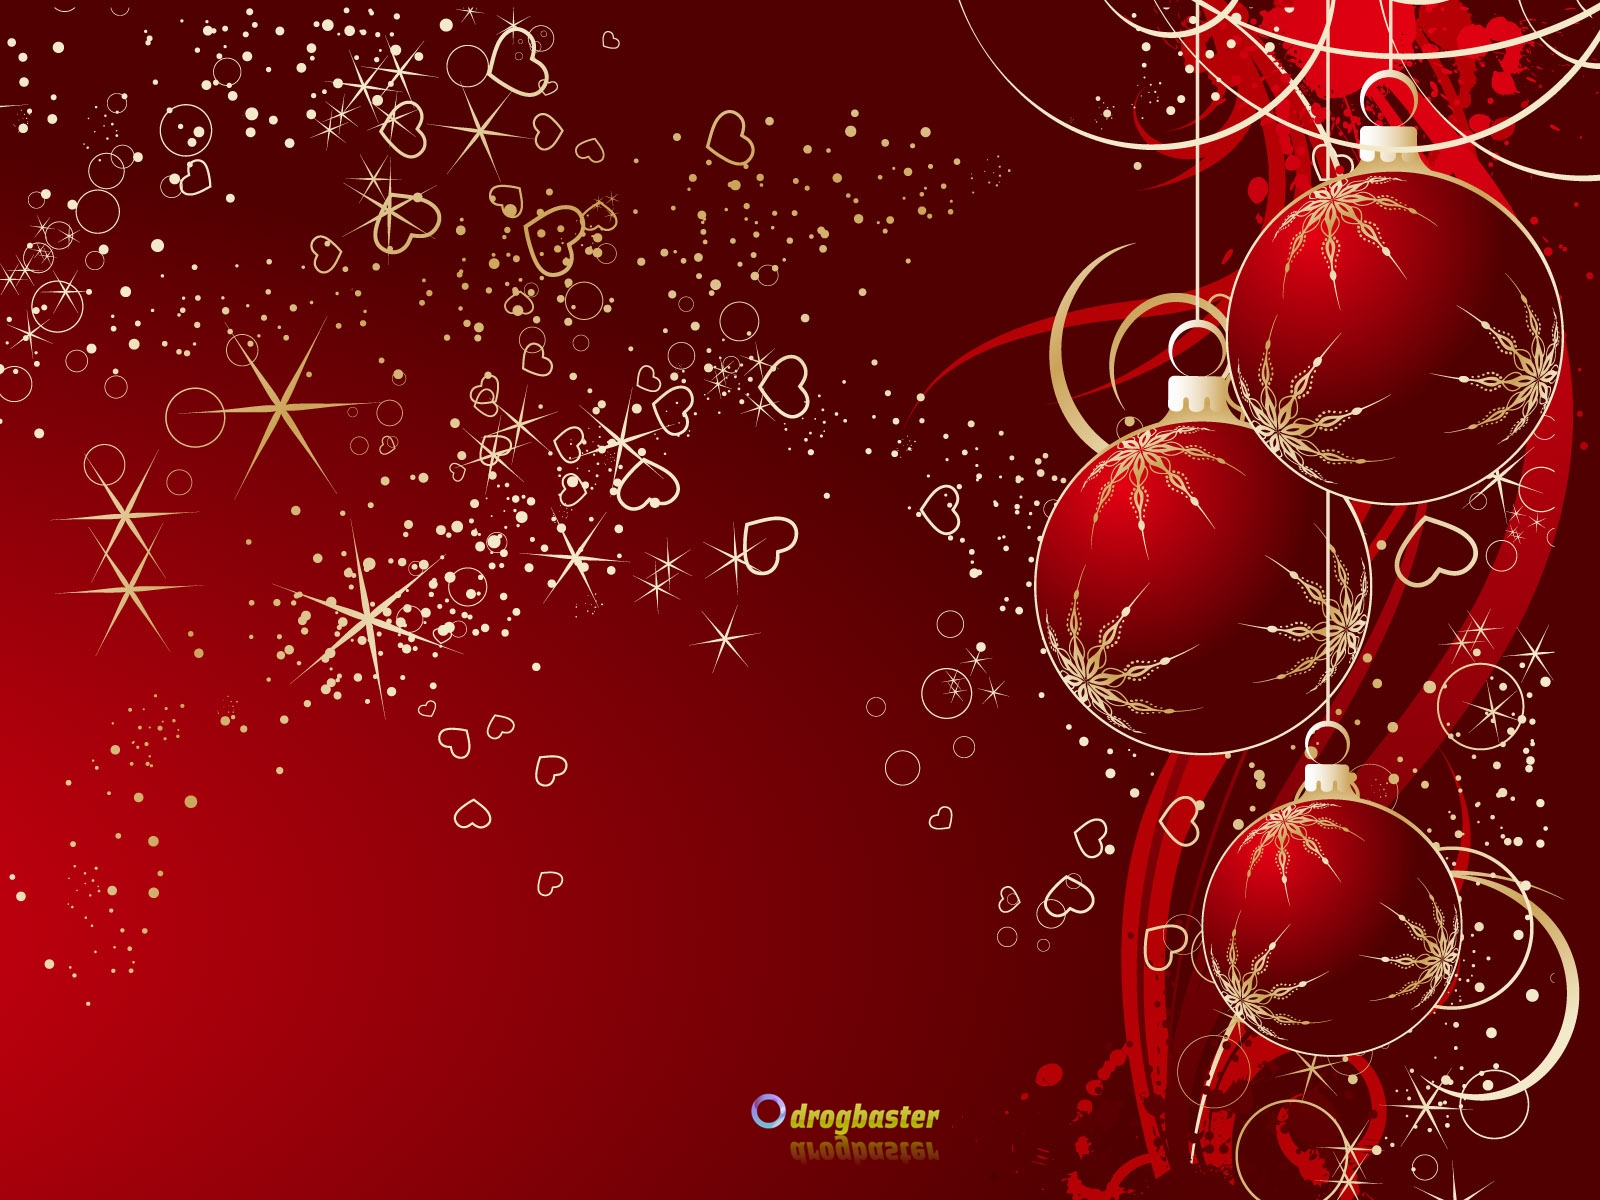 Sfondi Natalizi Per Android.Sfondi Immagini E Decori Di Natale Grafica Per Cellulare Android